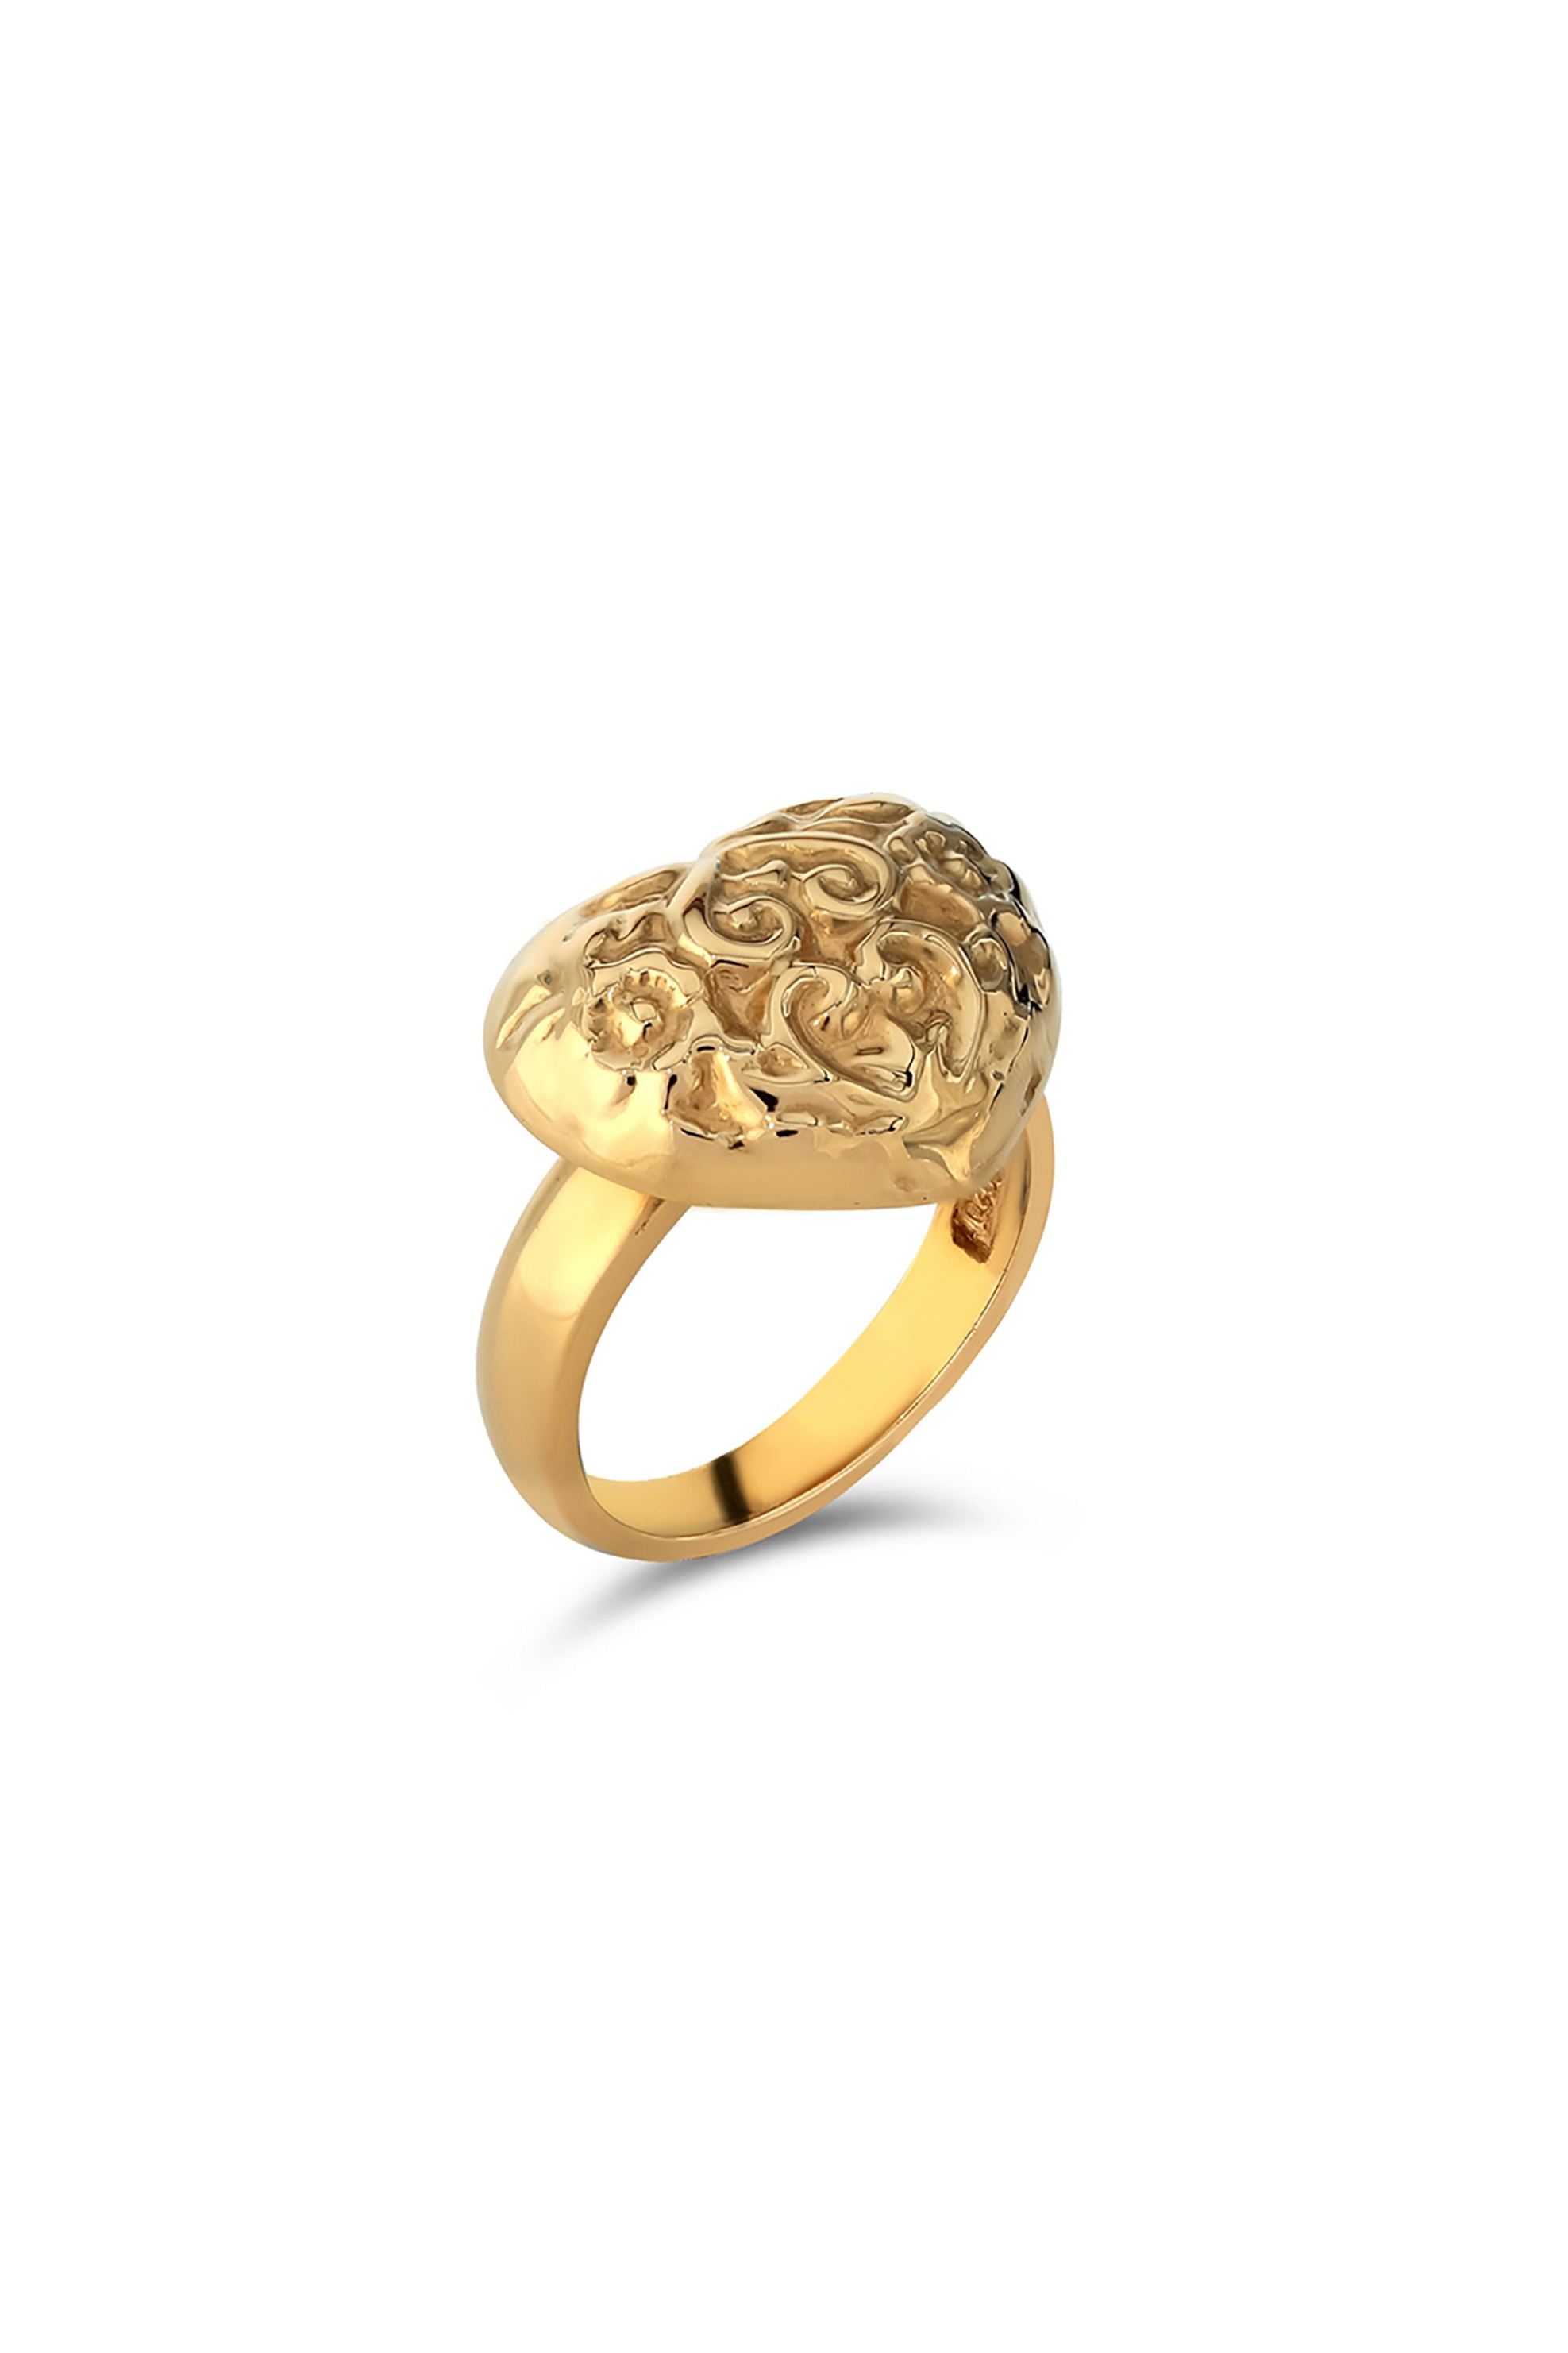 Γυναίκα > ΑΞΕΣΟΥΑΡ > Κοσμήματα > Δαχτυλίδια Folli Follie γυναικείο δαχτυλίδι σκαλιστή καρδιά Archaics - 1R22S014Y Χρυσό